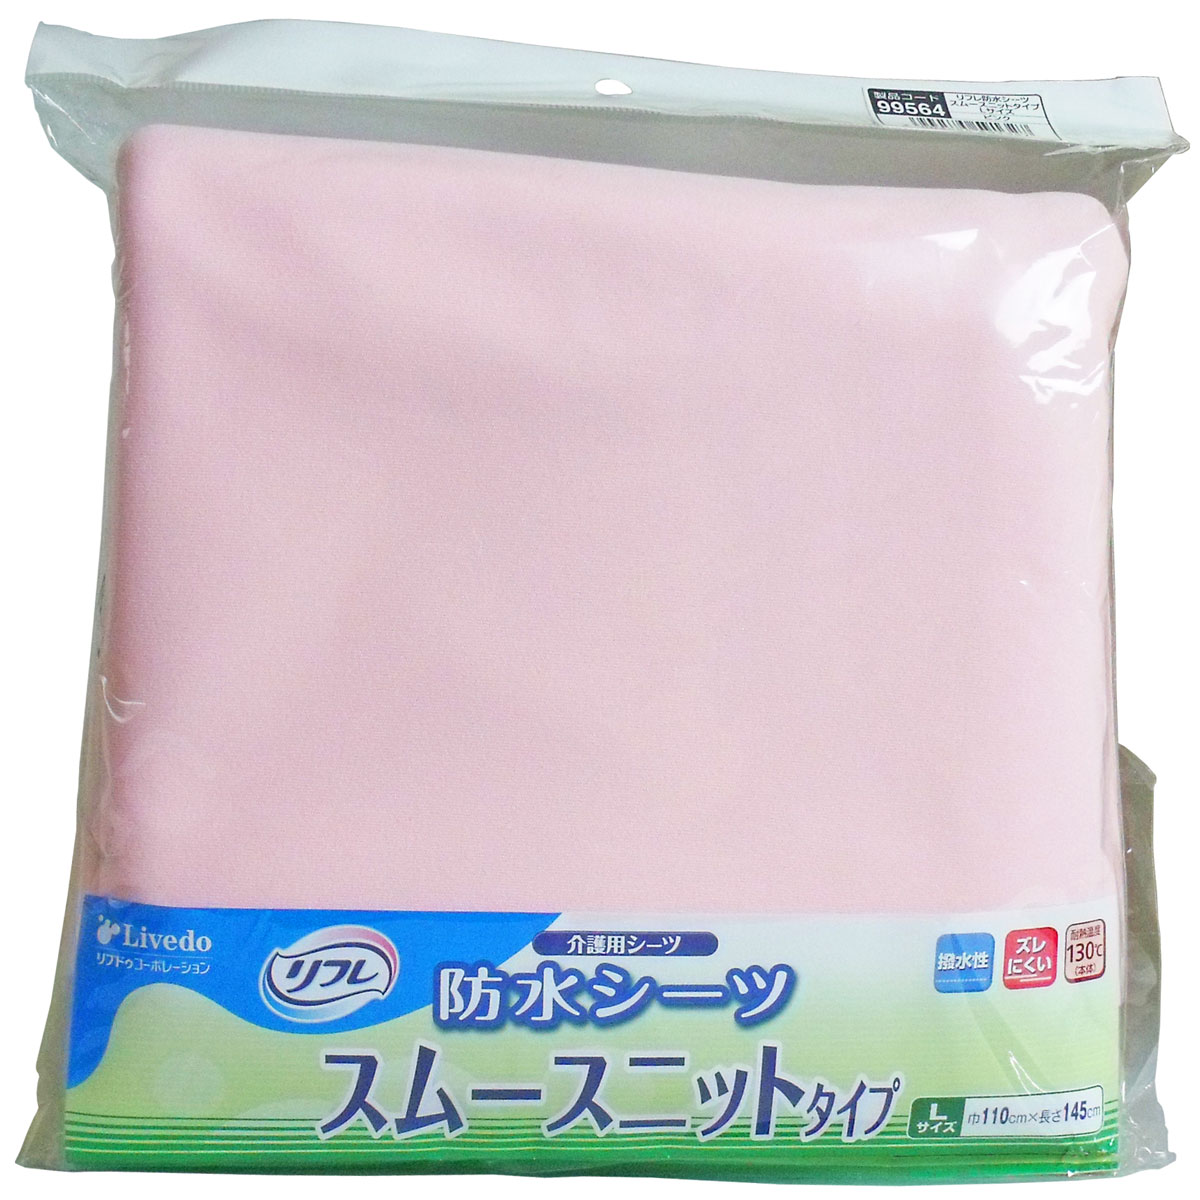 【訳あり】 リフレ 防水シーツ スムースニットタイプ Lサイズ ピンク 1枚入